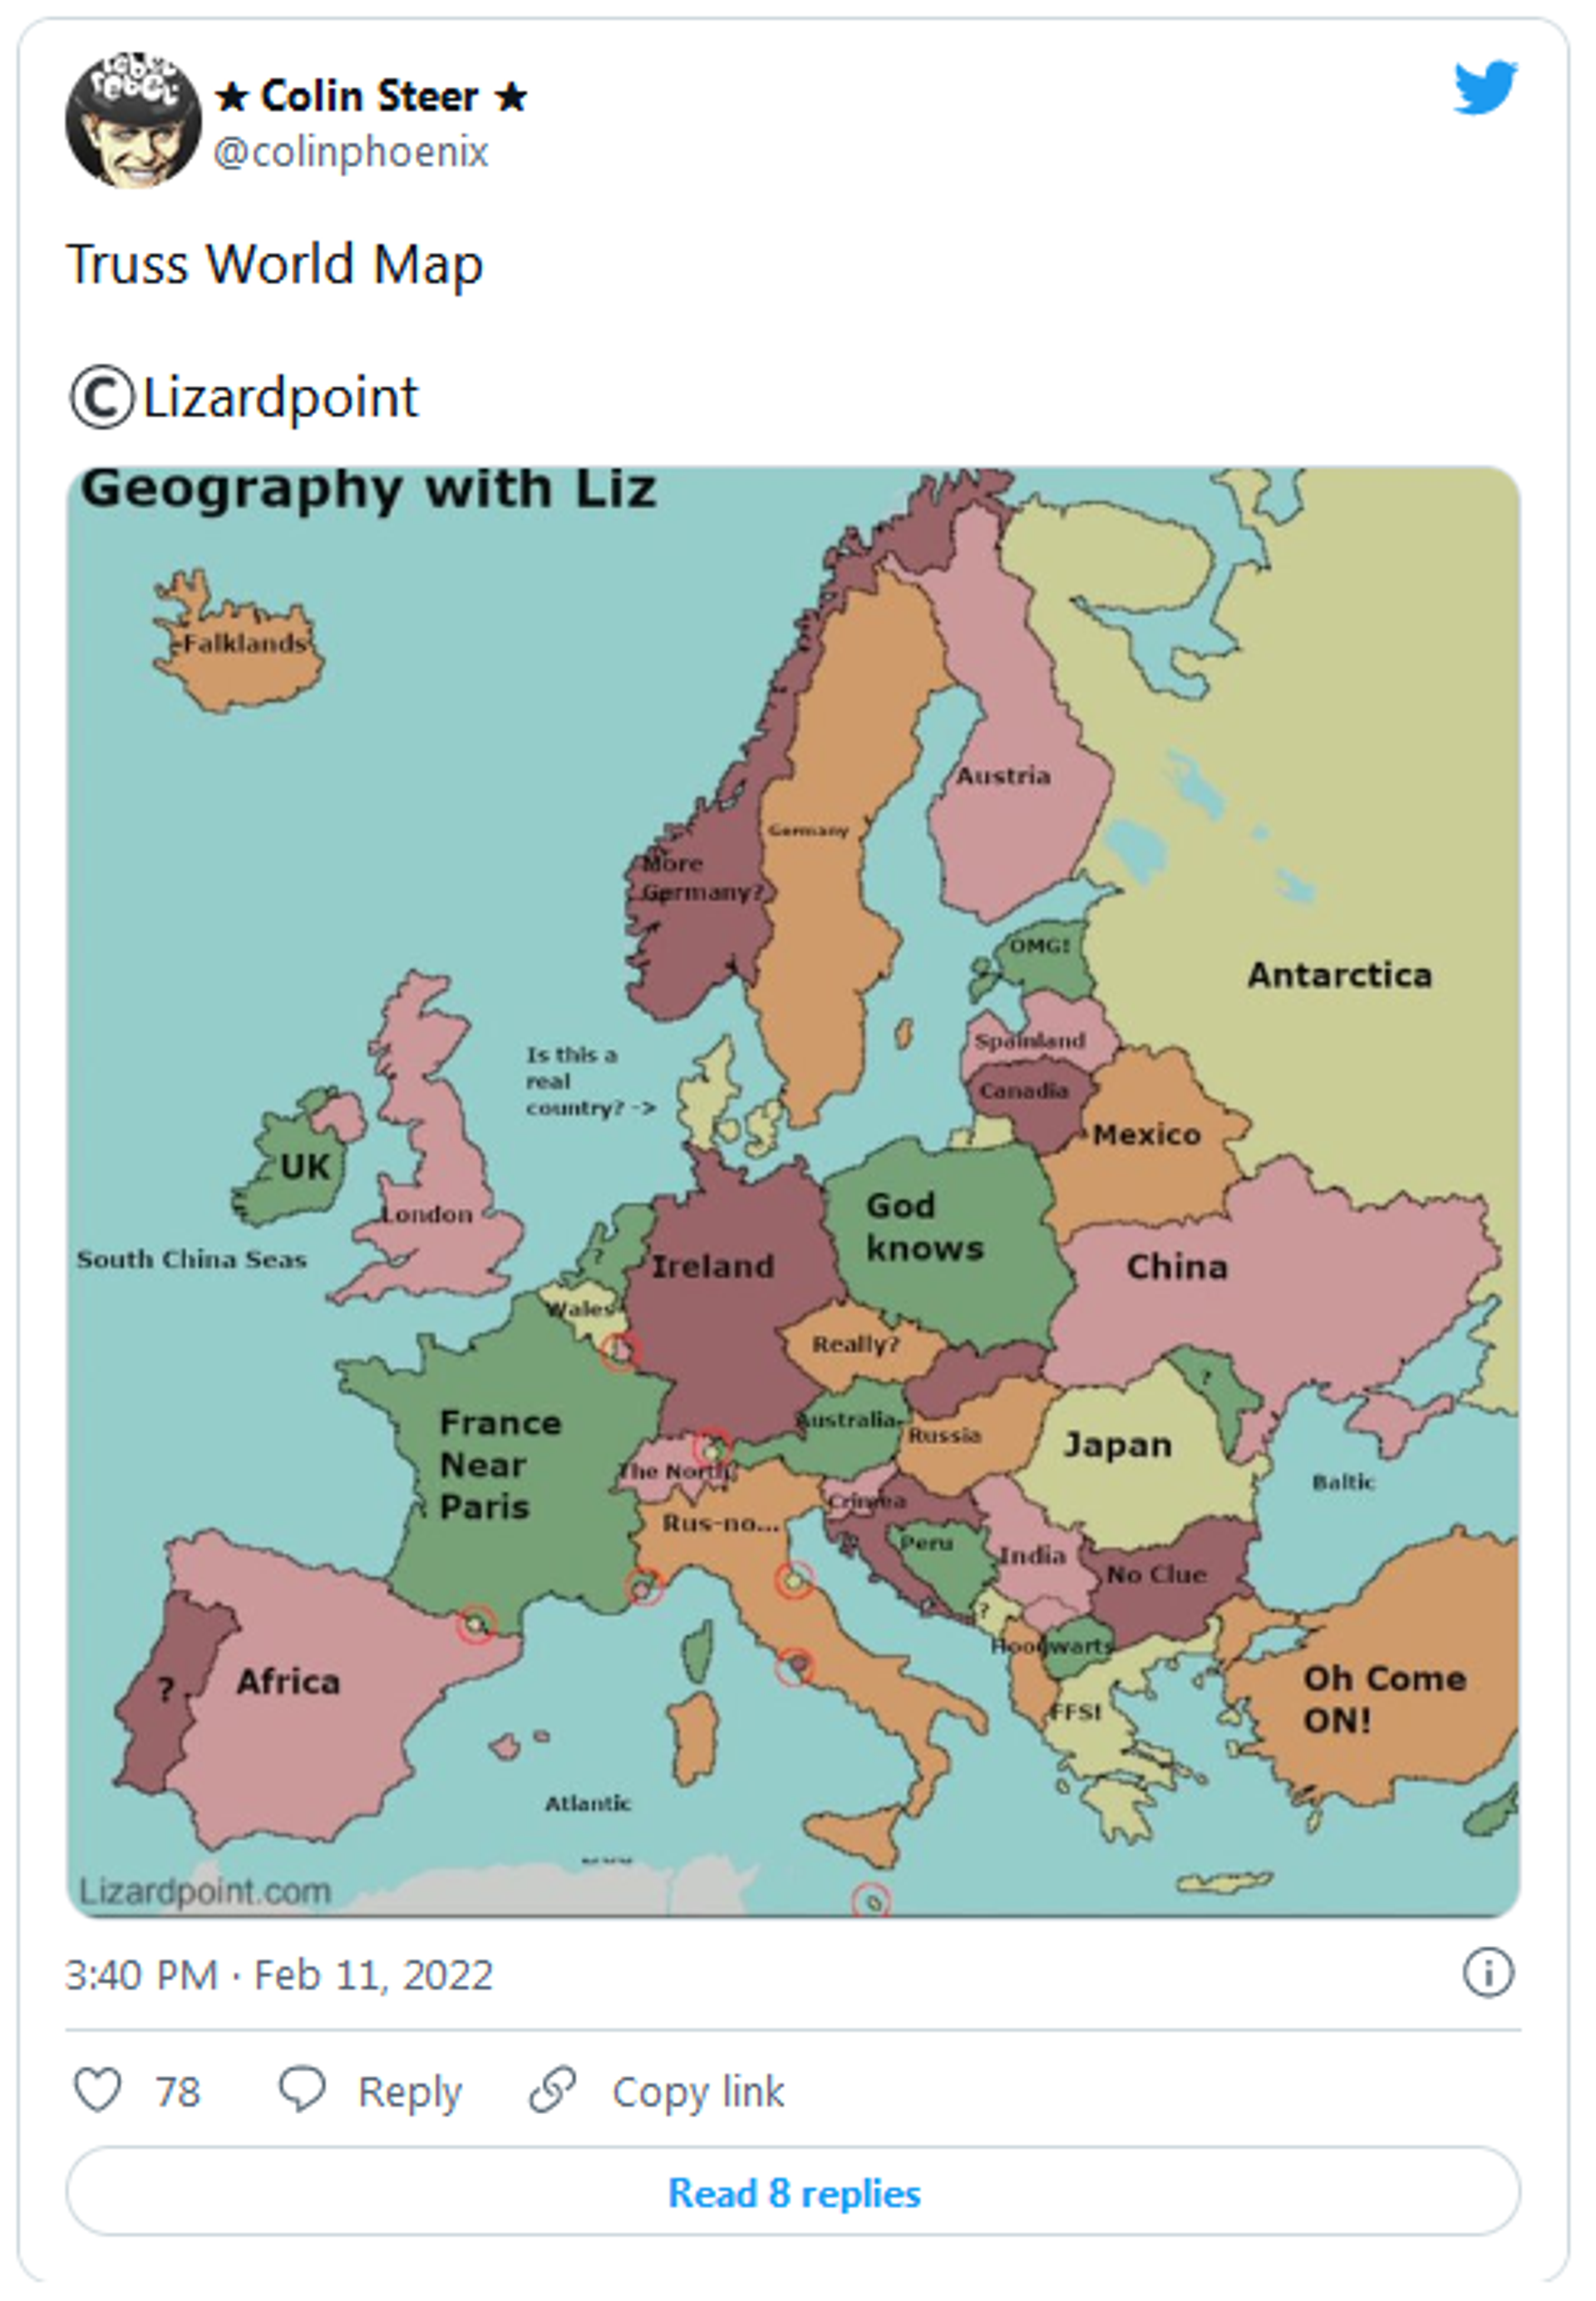 Tweet dedicated to Liz Truss's geography knowledge. - Sputnik International, 1920, 11.02.2022